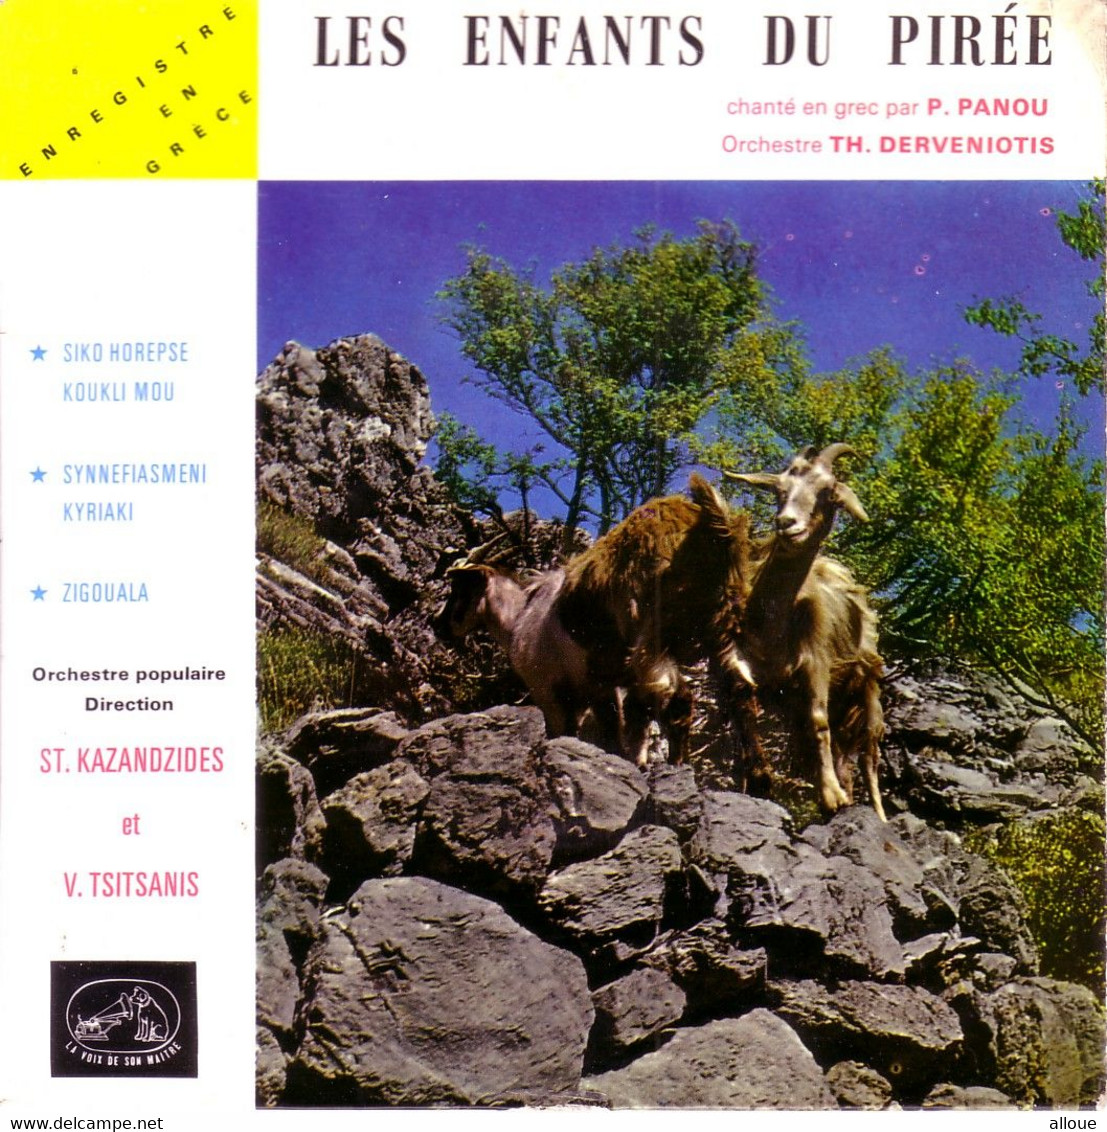 LES ENFANTS DU PIREE (TA PEDIA TOU PIREA) CHANTE PAR P. PANOU ORCHESTRE DE TH. DERVENIOTIS- 45 T - VACANCES EN GRECE - World Music